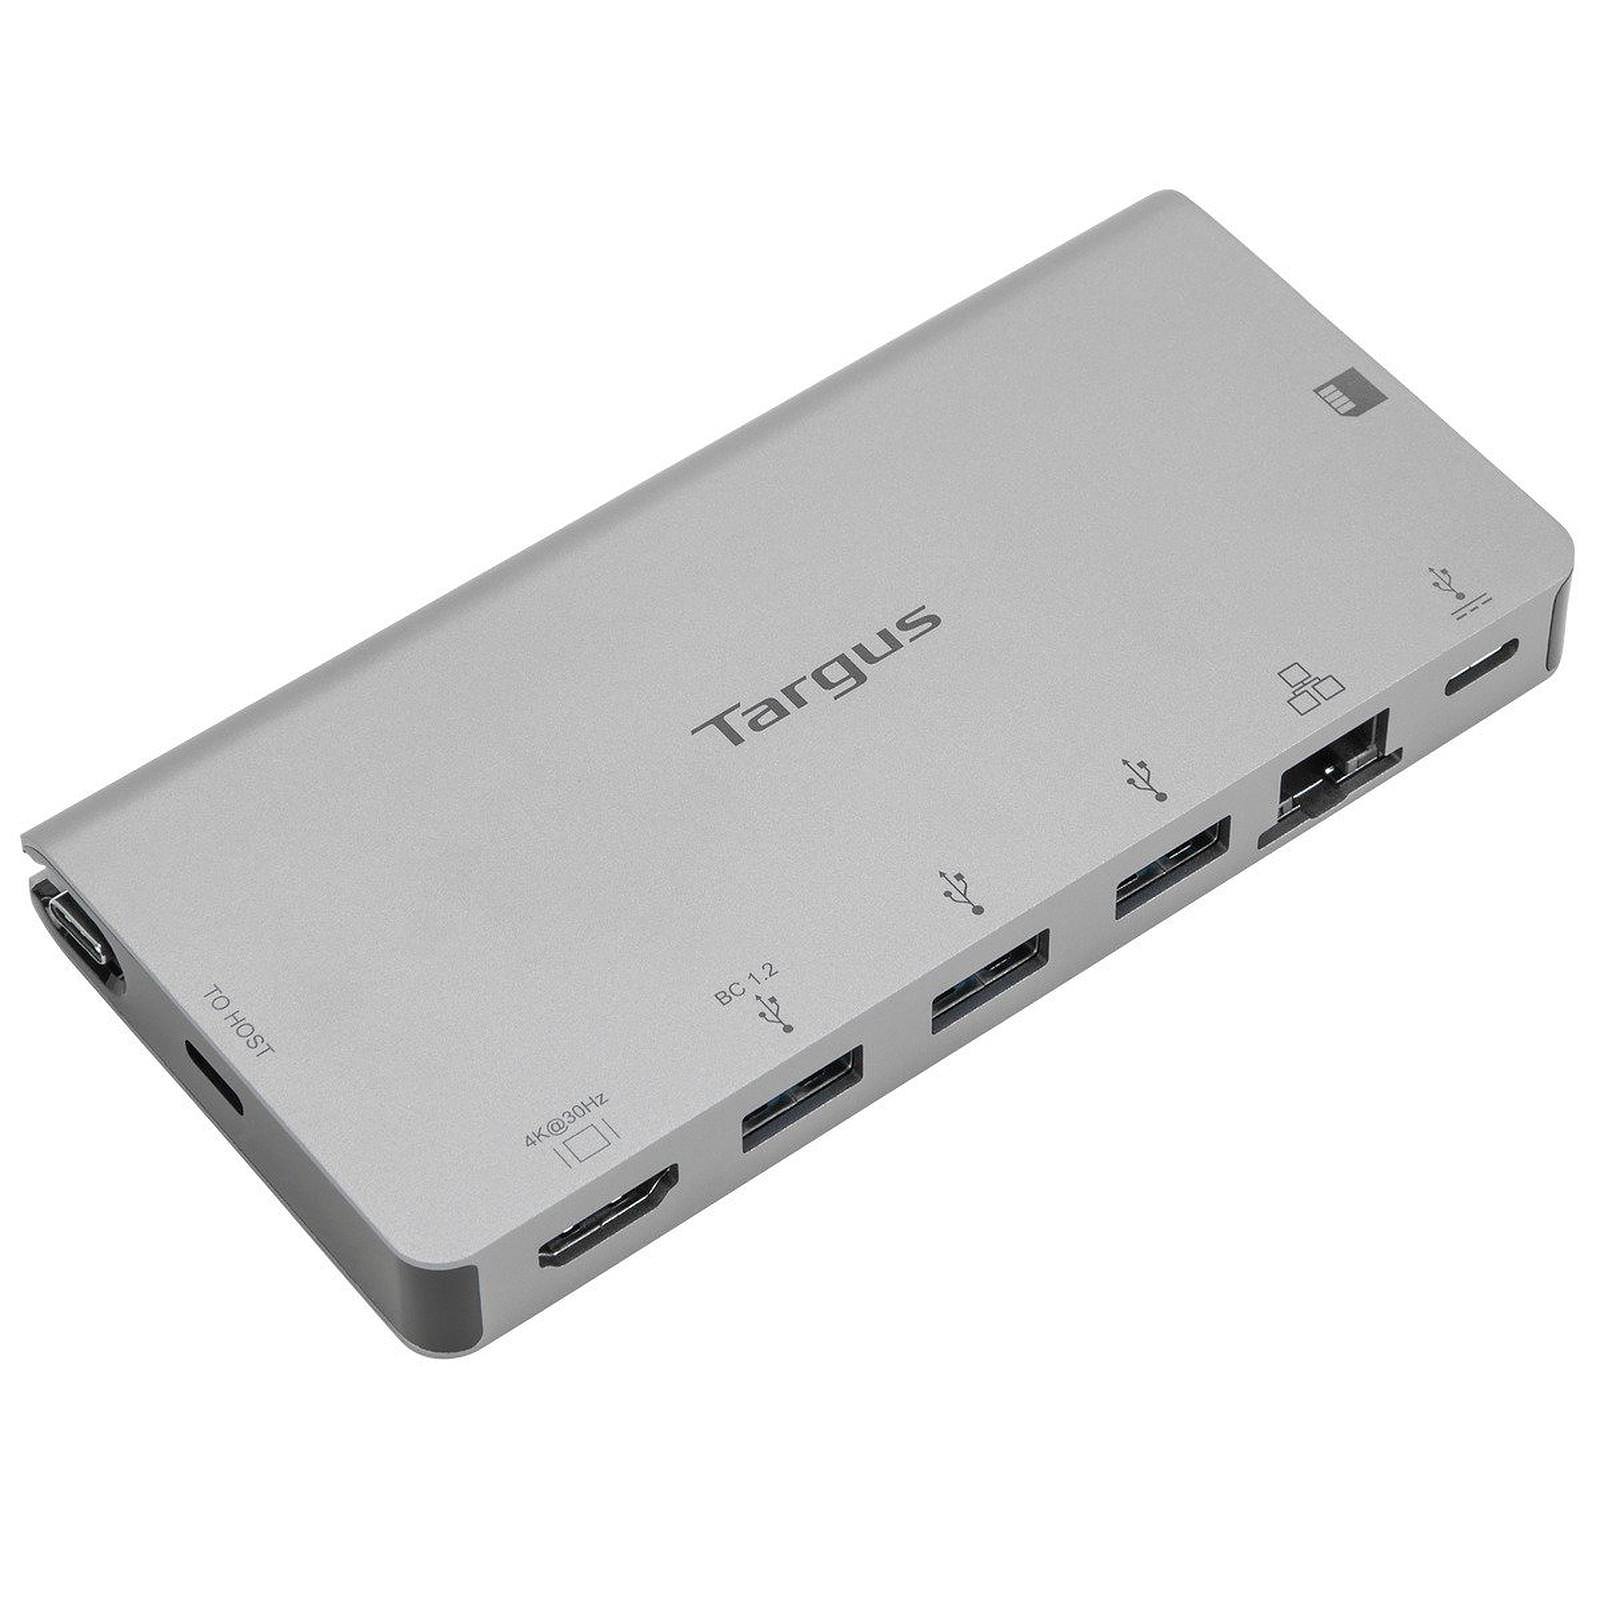 Targus Station d'accueil USB-C vers HDMI 4K, DP Alt Mode Single Video, avec lecteur de carte, 100 W PD Pass-Through et cable USB-C amovible - USB Targus